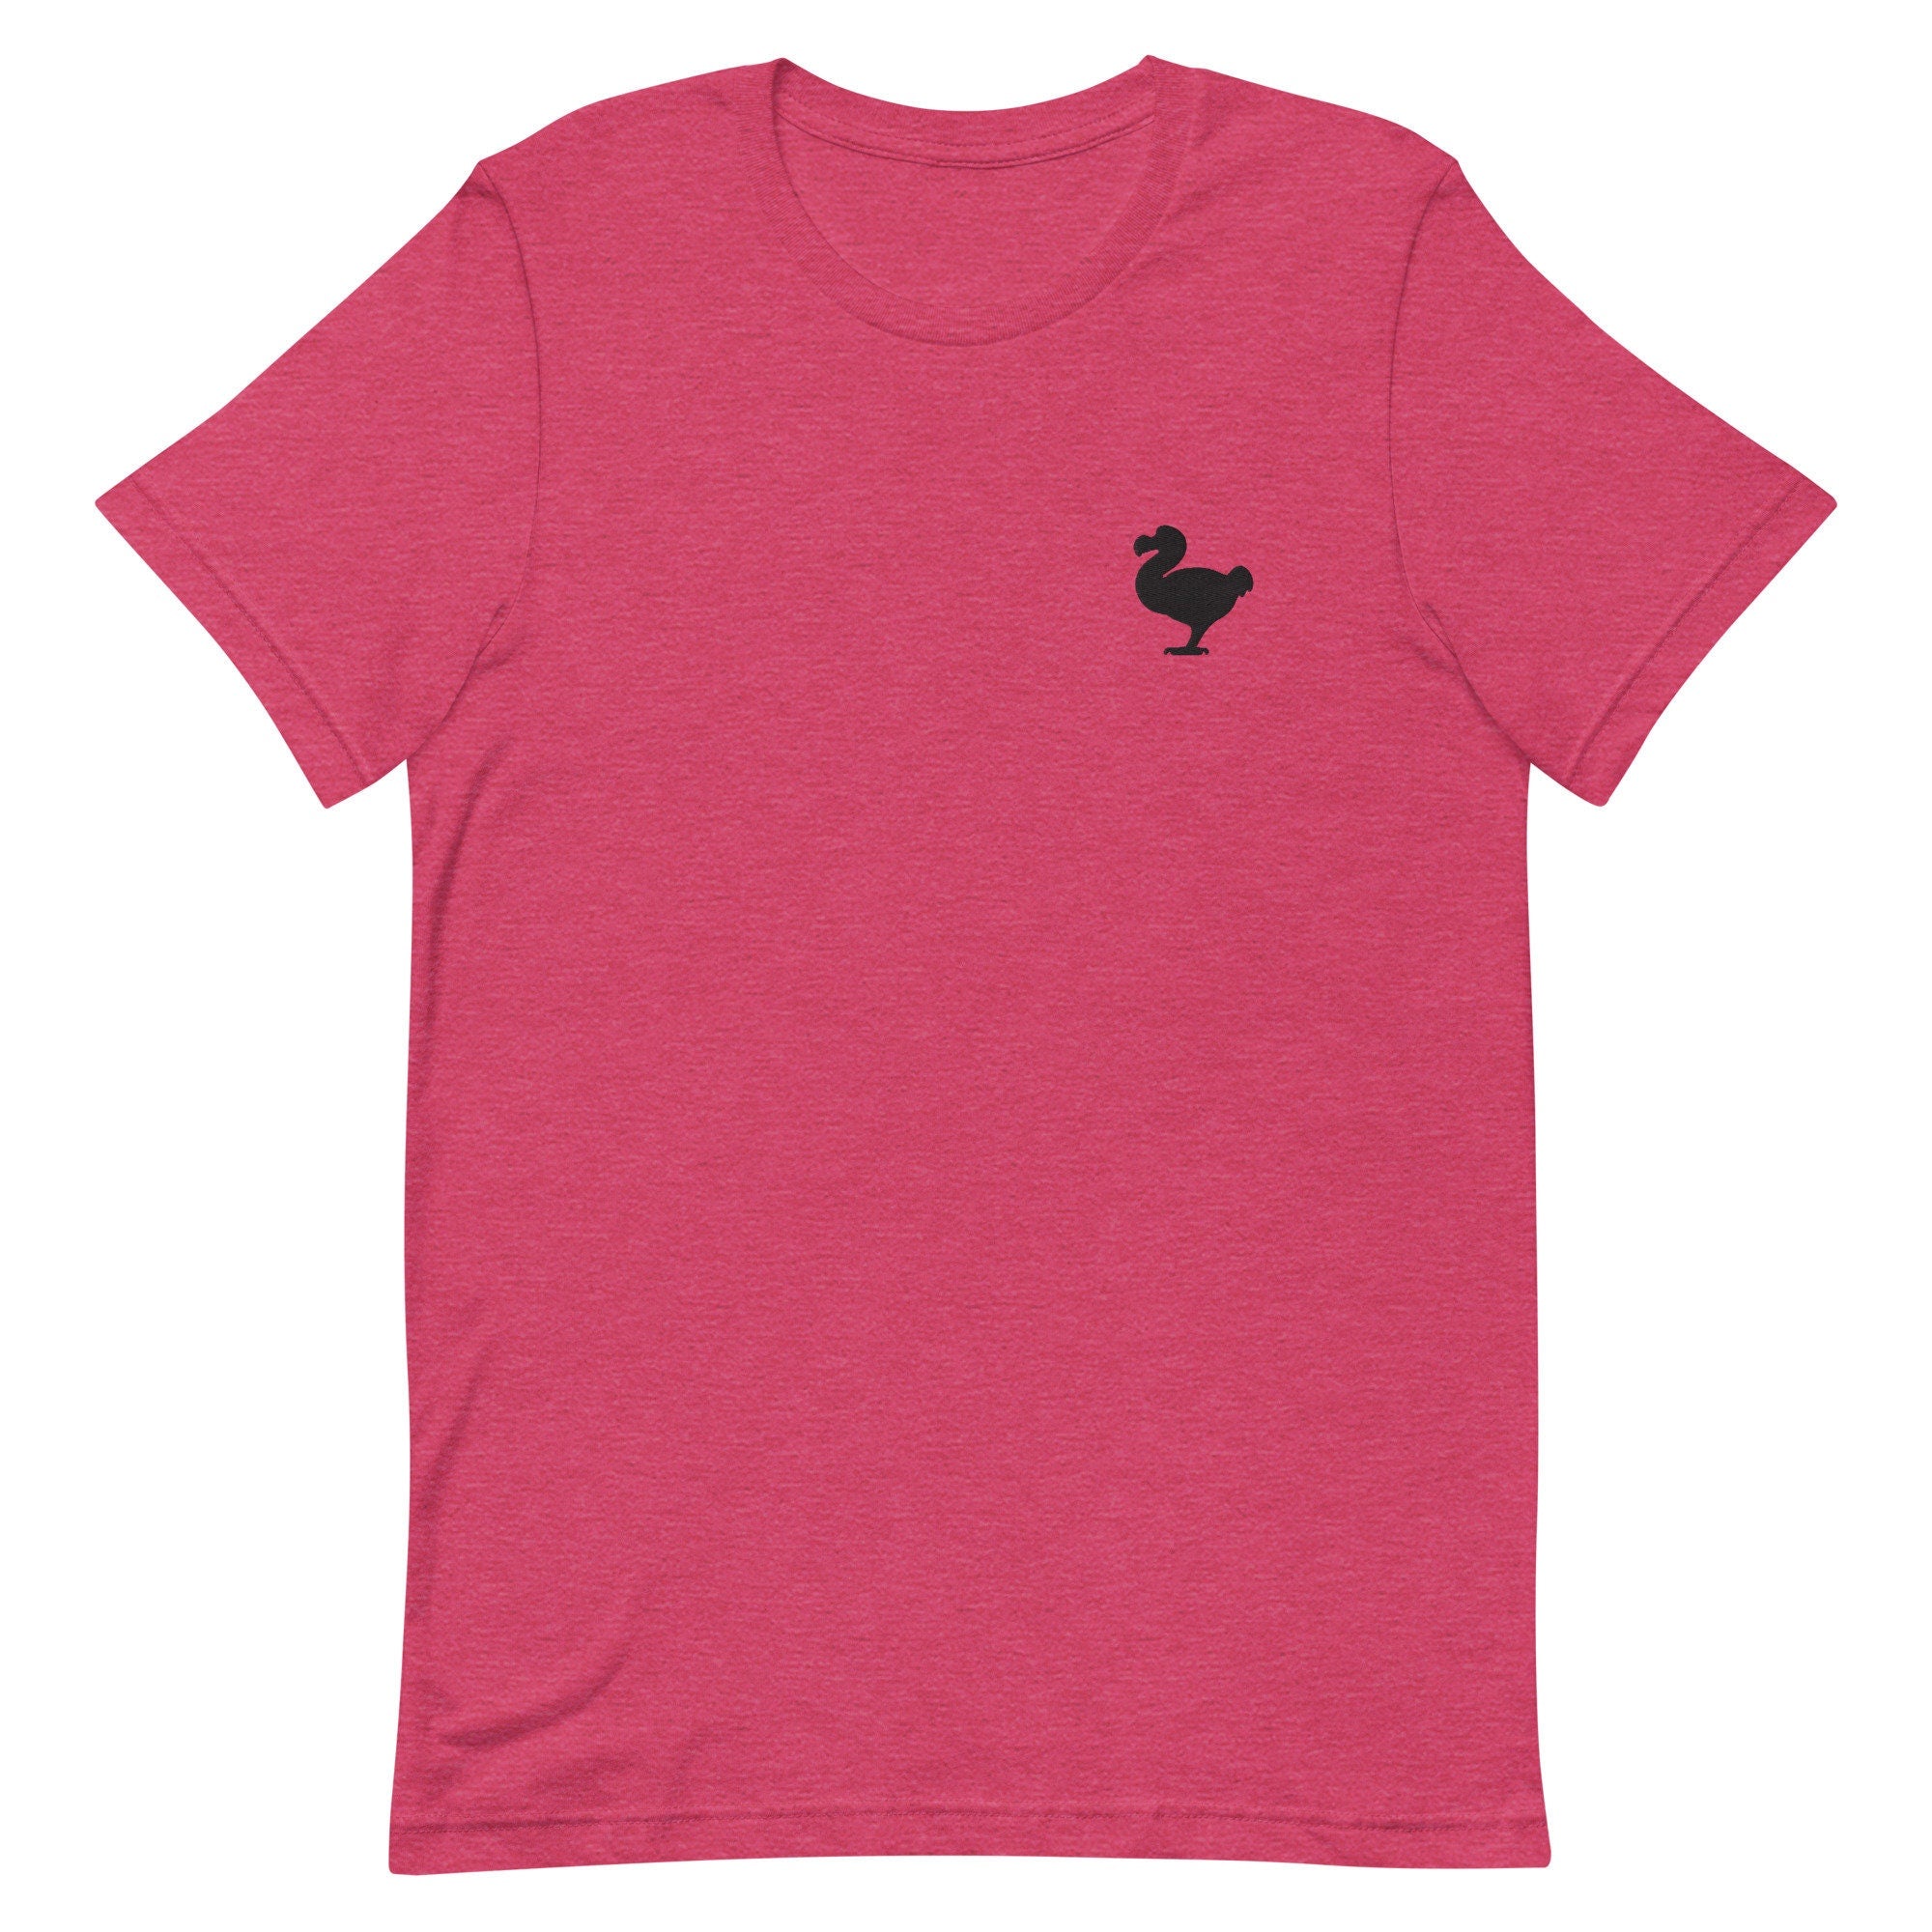 Dodo Bird Premium Men's T-Shirt, Embroidered Men's T-Shirt Gift for Boyfriend, Men's Short Sleeve Shirt - Multiple Colors